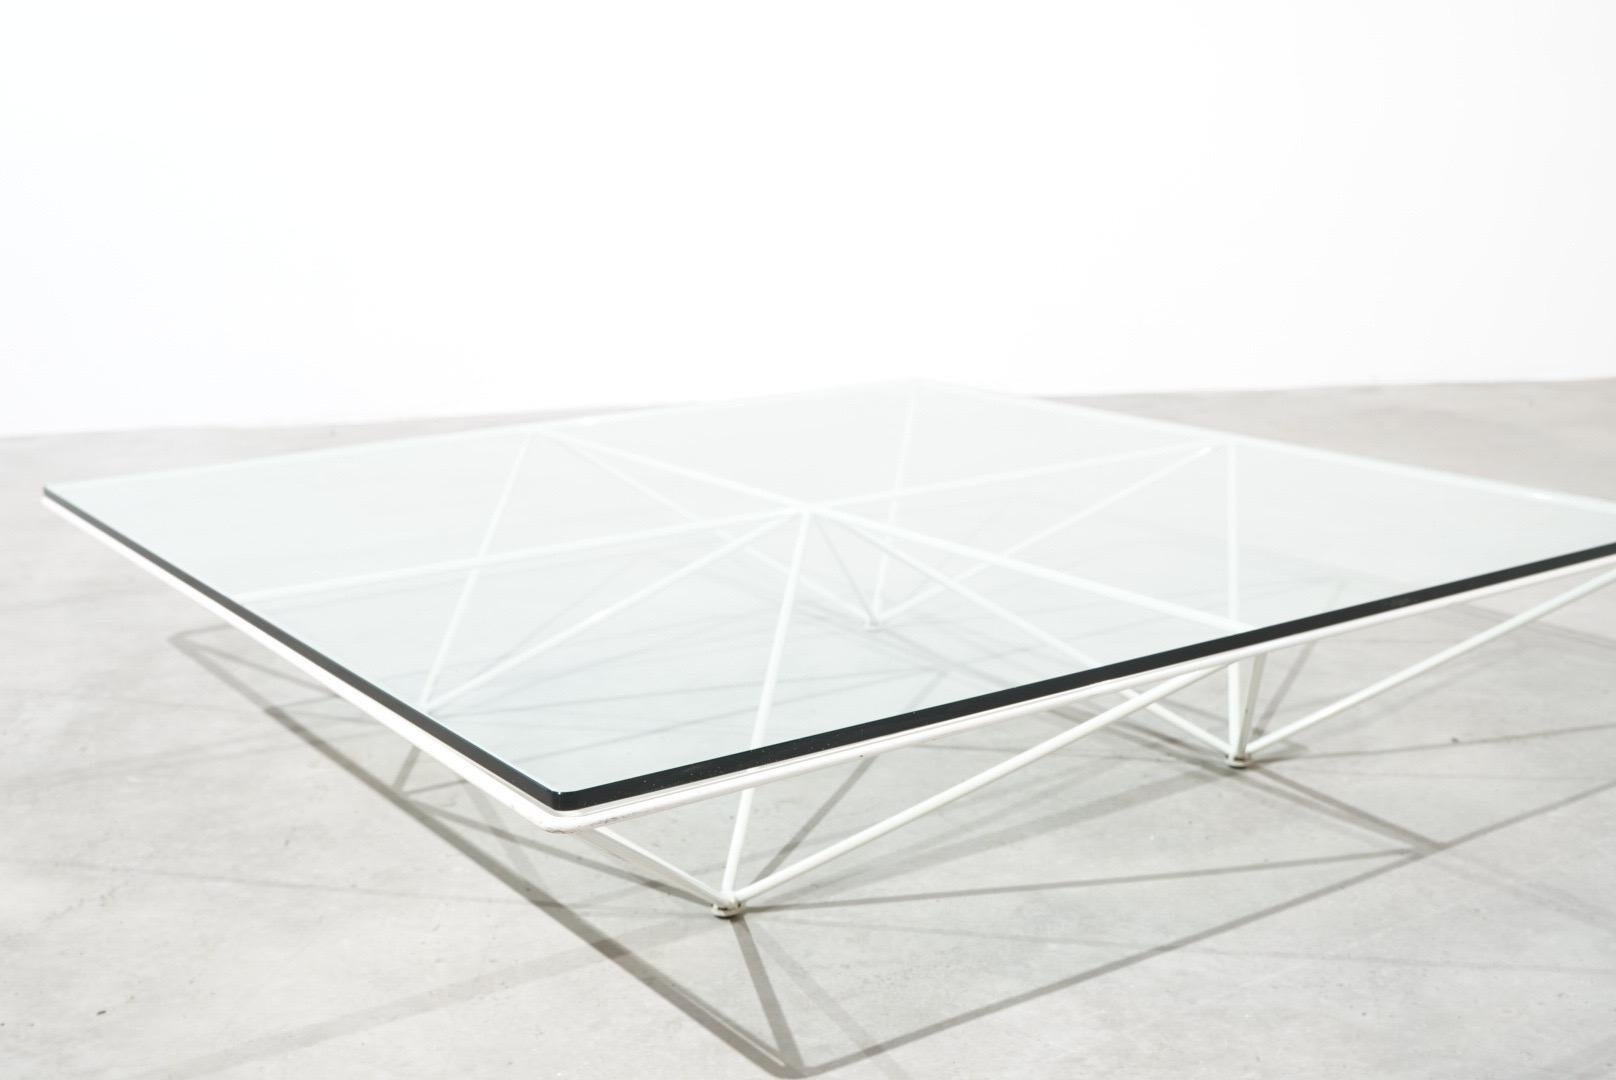 Alanda de Paolo Piva est une table basse produite par A.C.I.C., aujourd'hui B&B Italia, en 1981. Sa conception suit une construction architecturale précise et est dotée d'une composition formelle caractéristique obtenue par l'assemblage de volumes